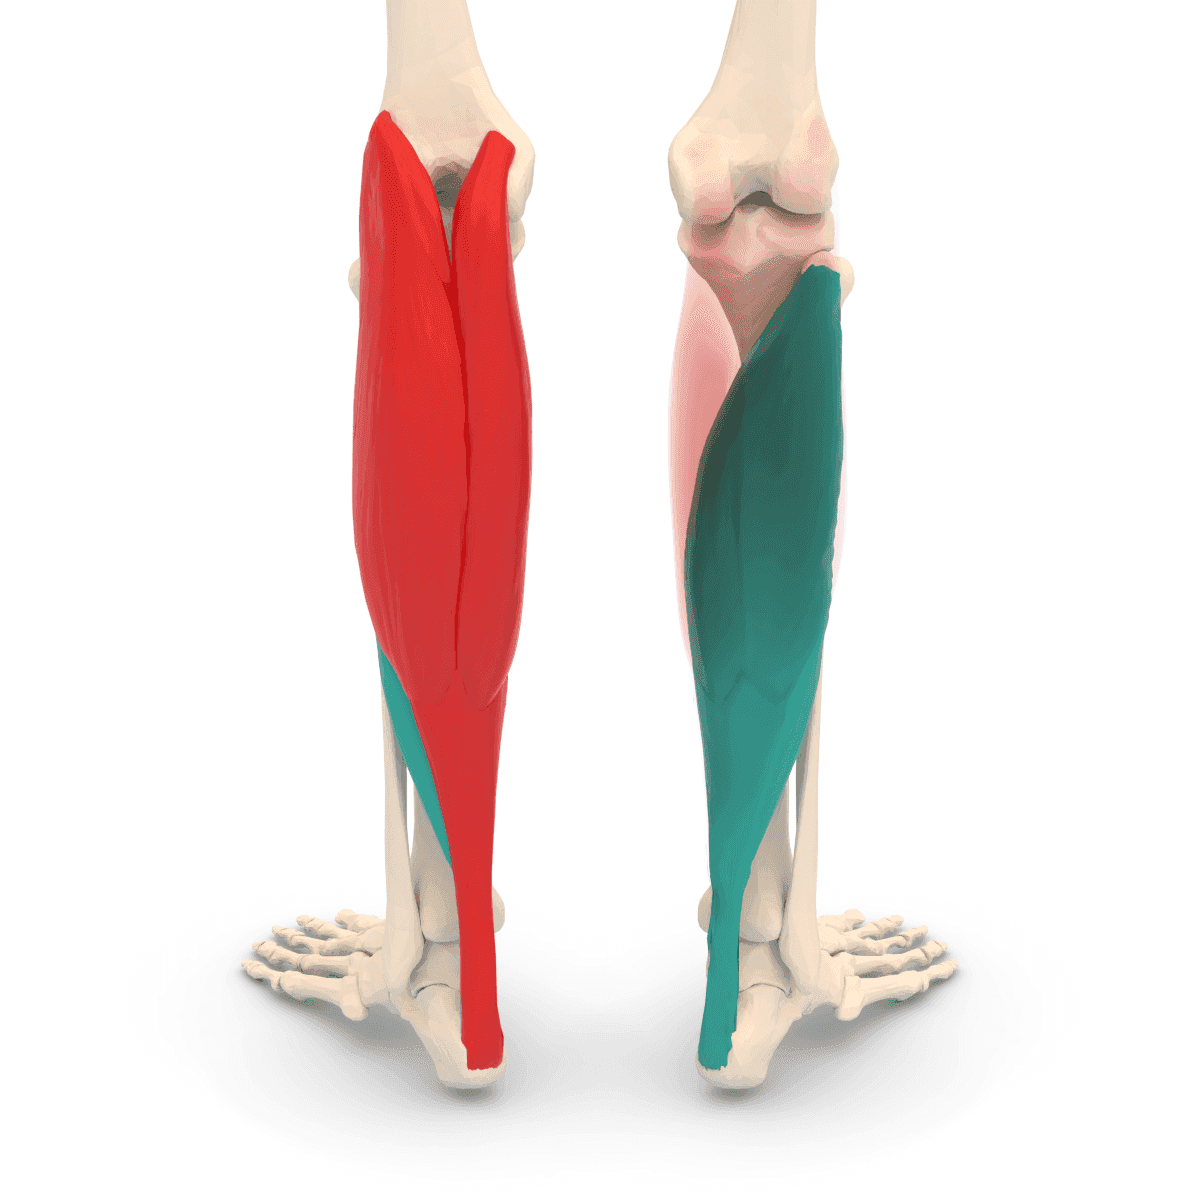 Soleus Muskel Triceps Surae Muskel im Unterschenkel dargestellt in einem Körpermodell